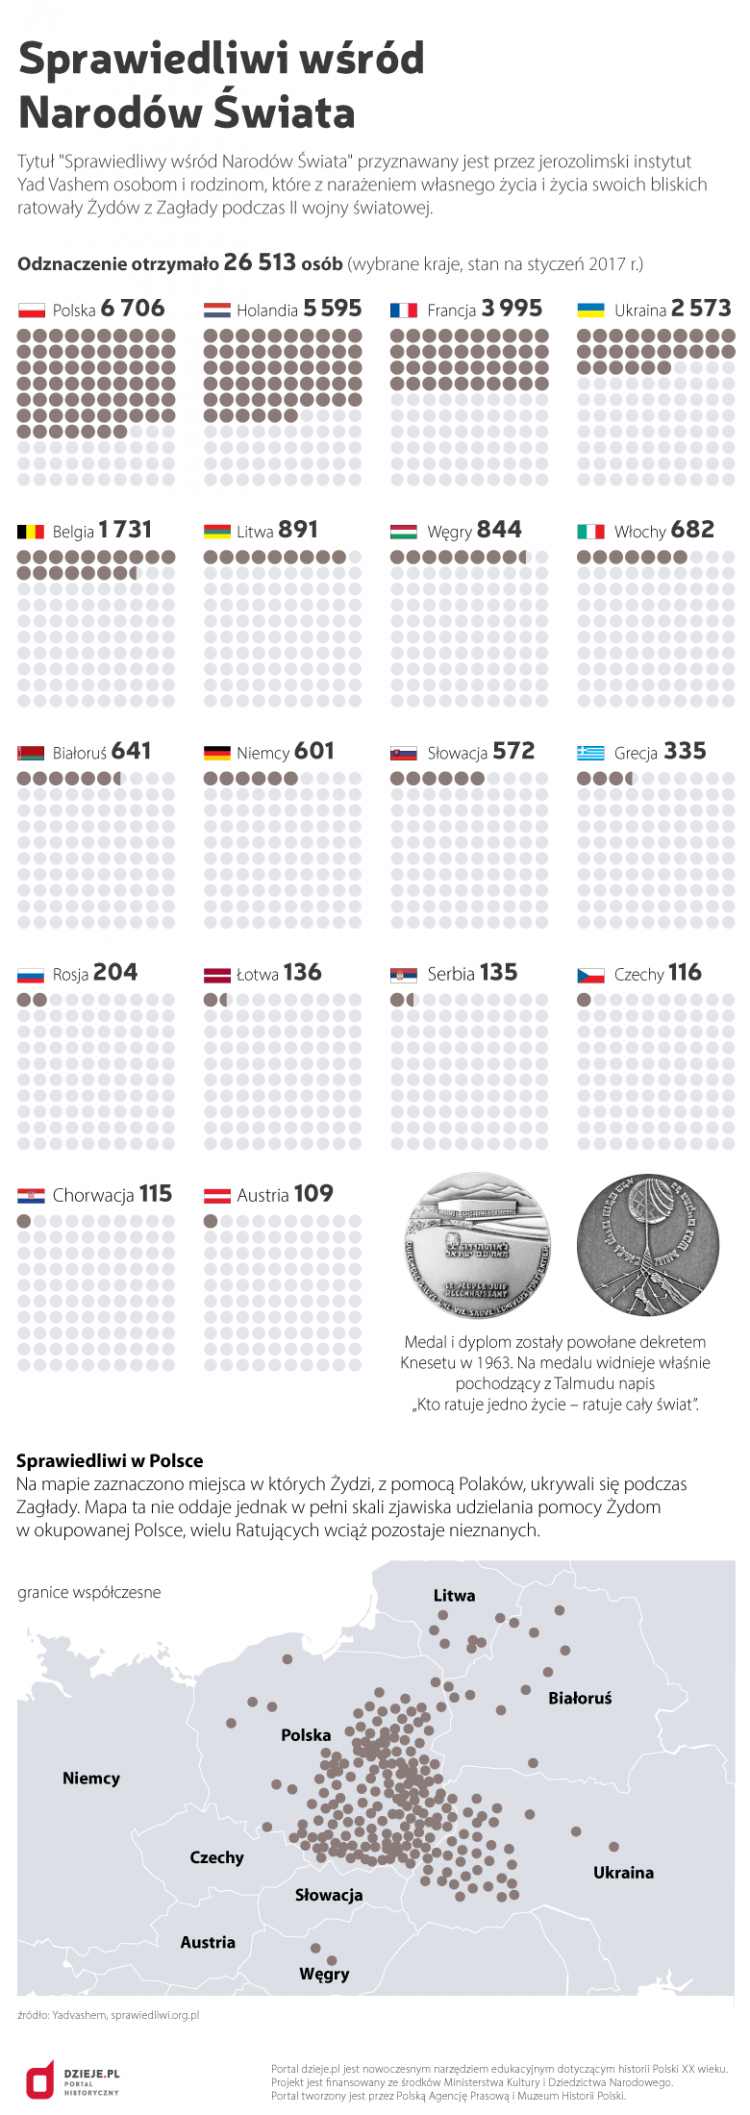 Sprawiedliwi wśród Narodów Świata. Źródło: Infografika PAP